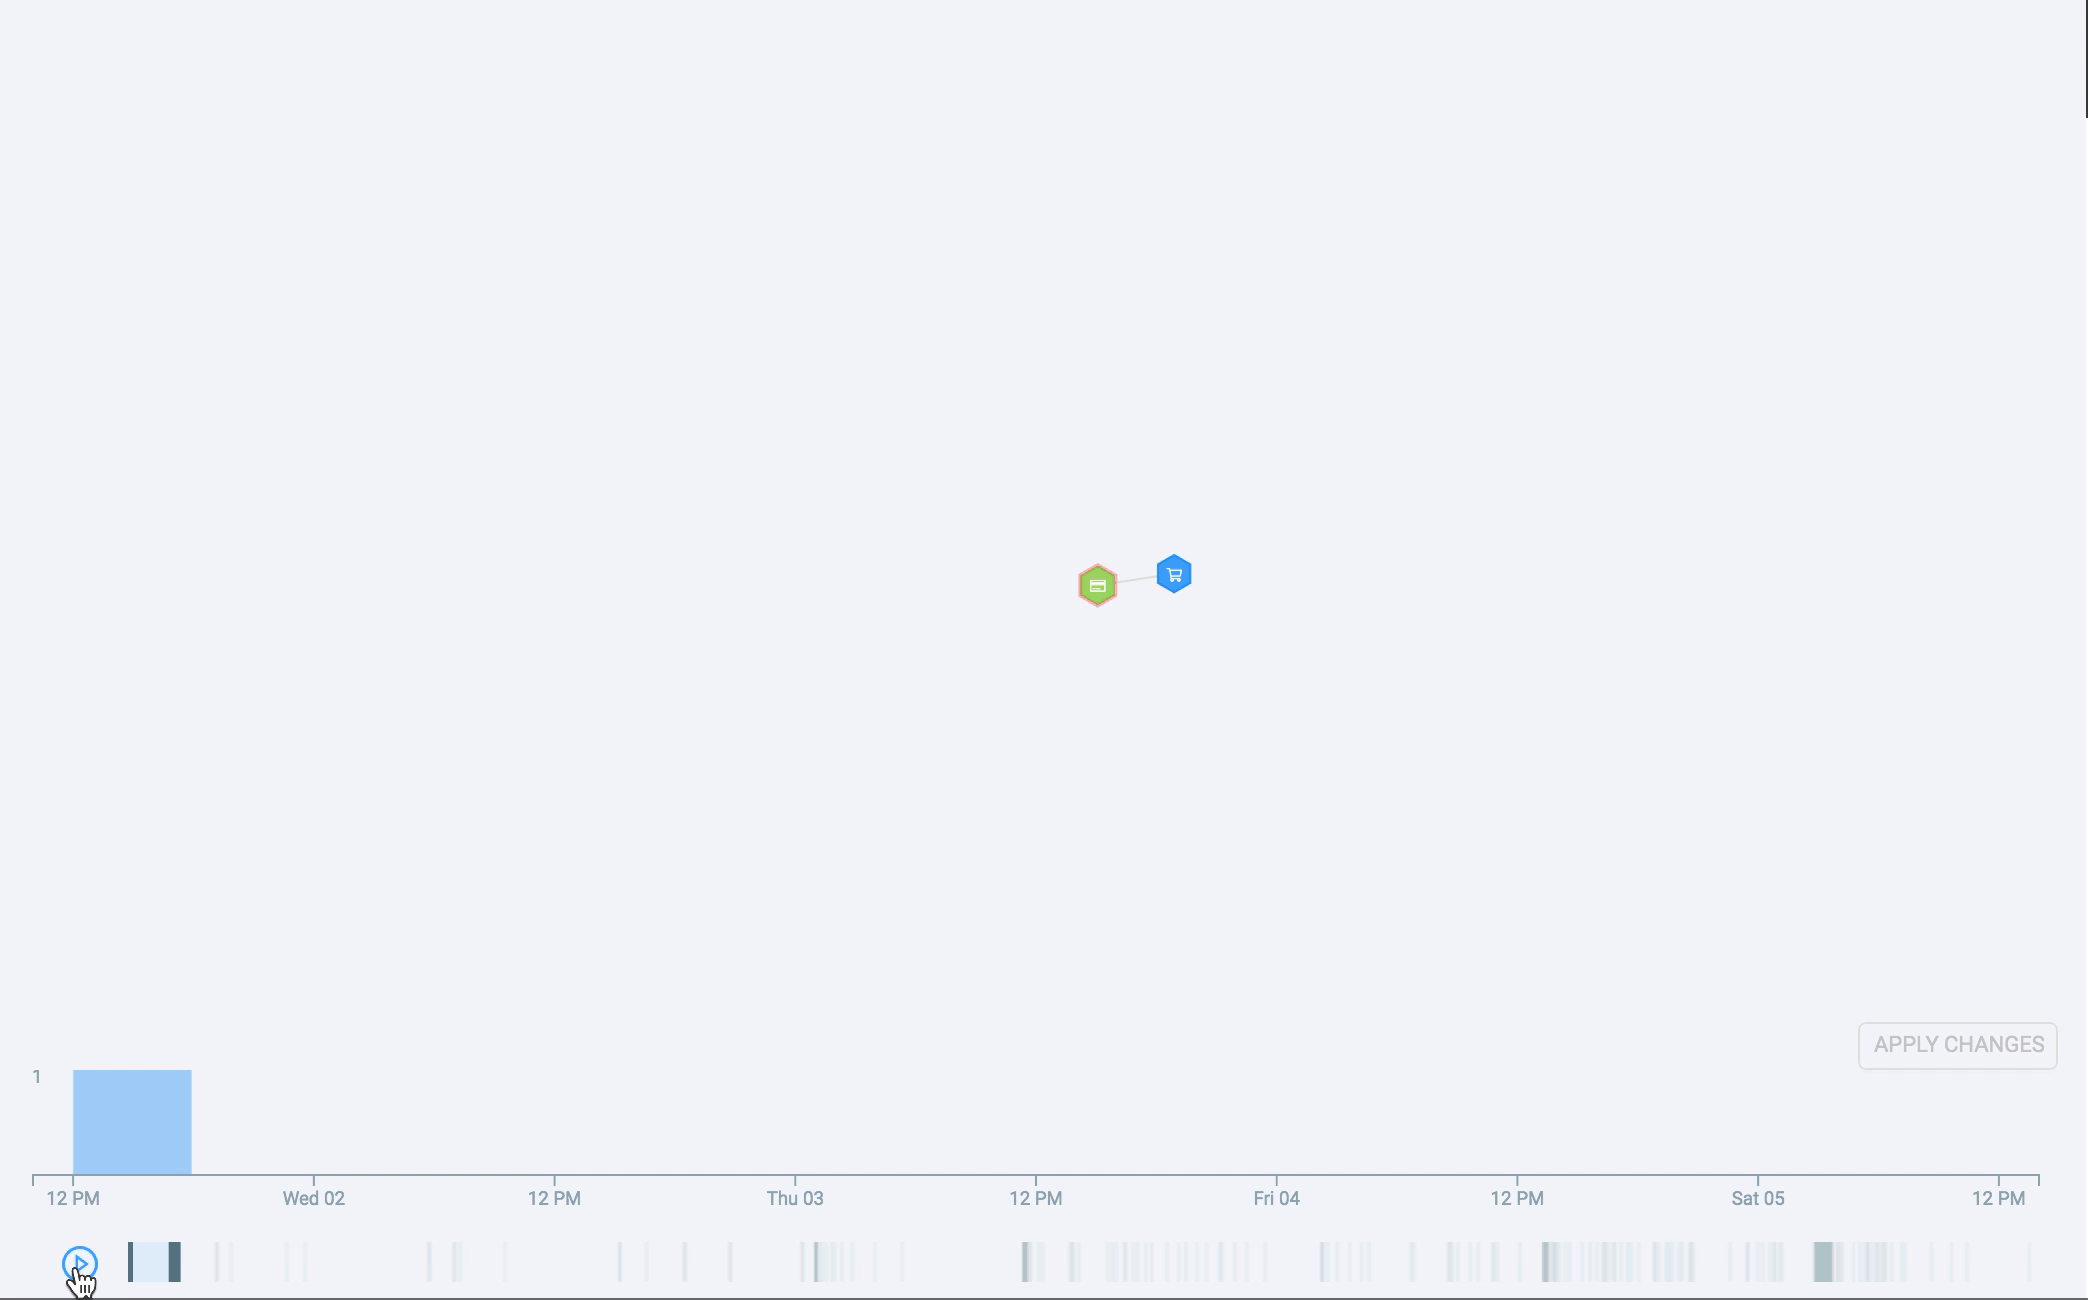 GIF que muestra un histograma temporal de tarjetas comprometidas luego de una filtración de datos